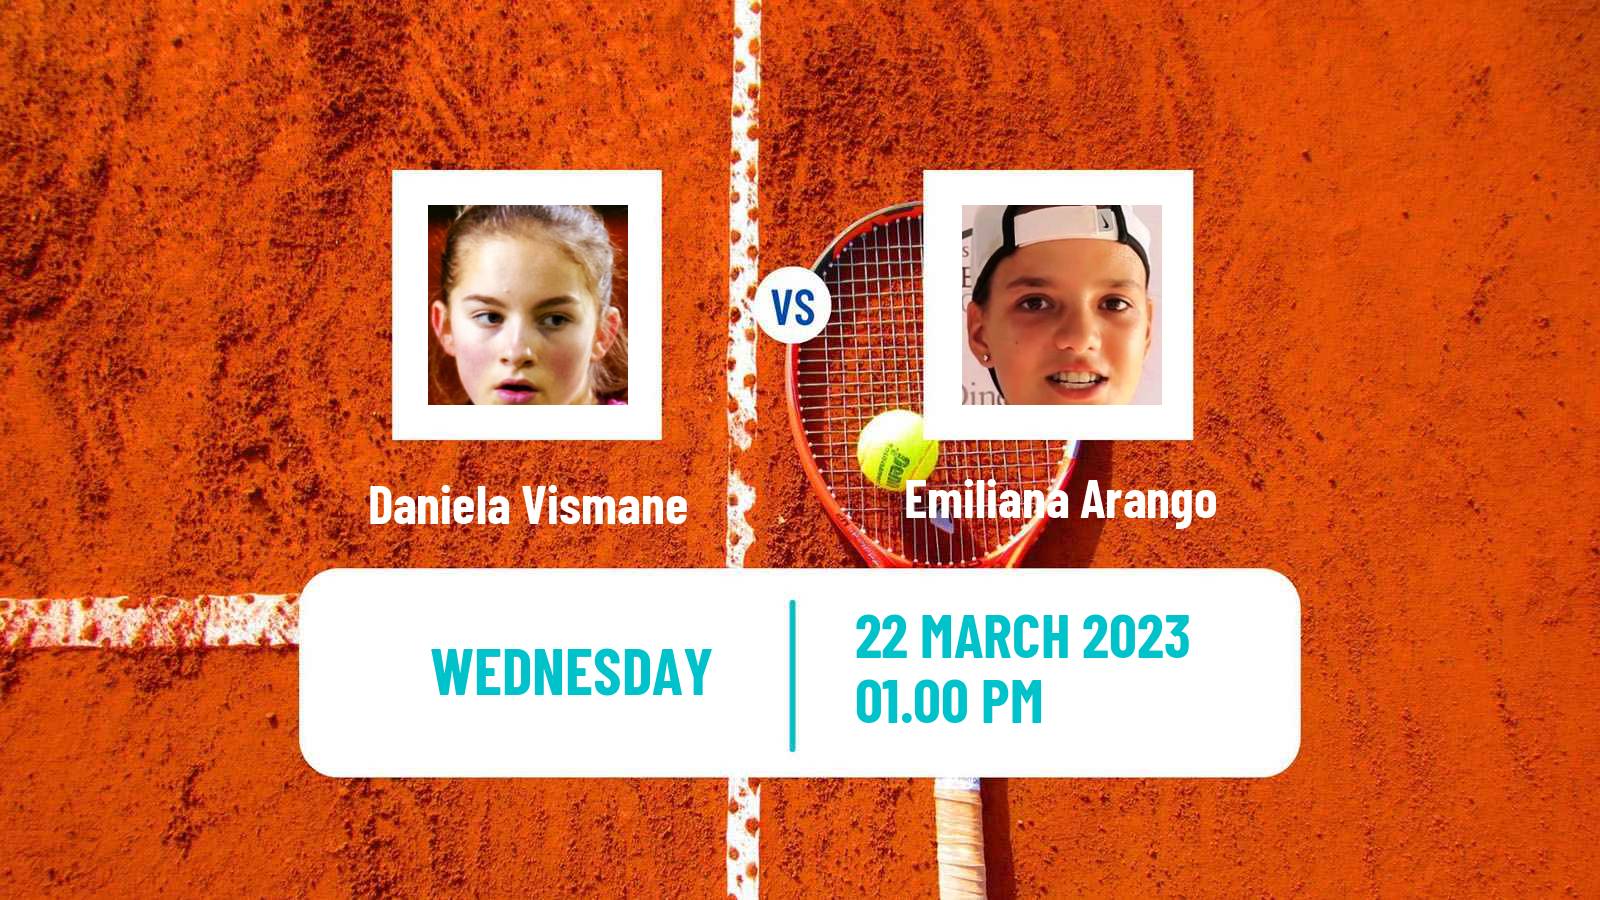 Tennis ITF Tournaments Daniela Vismane - Emiliana Arango